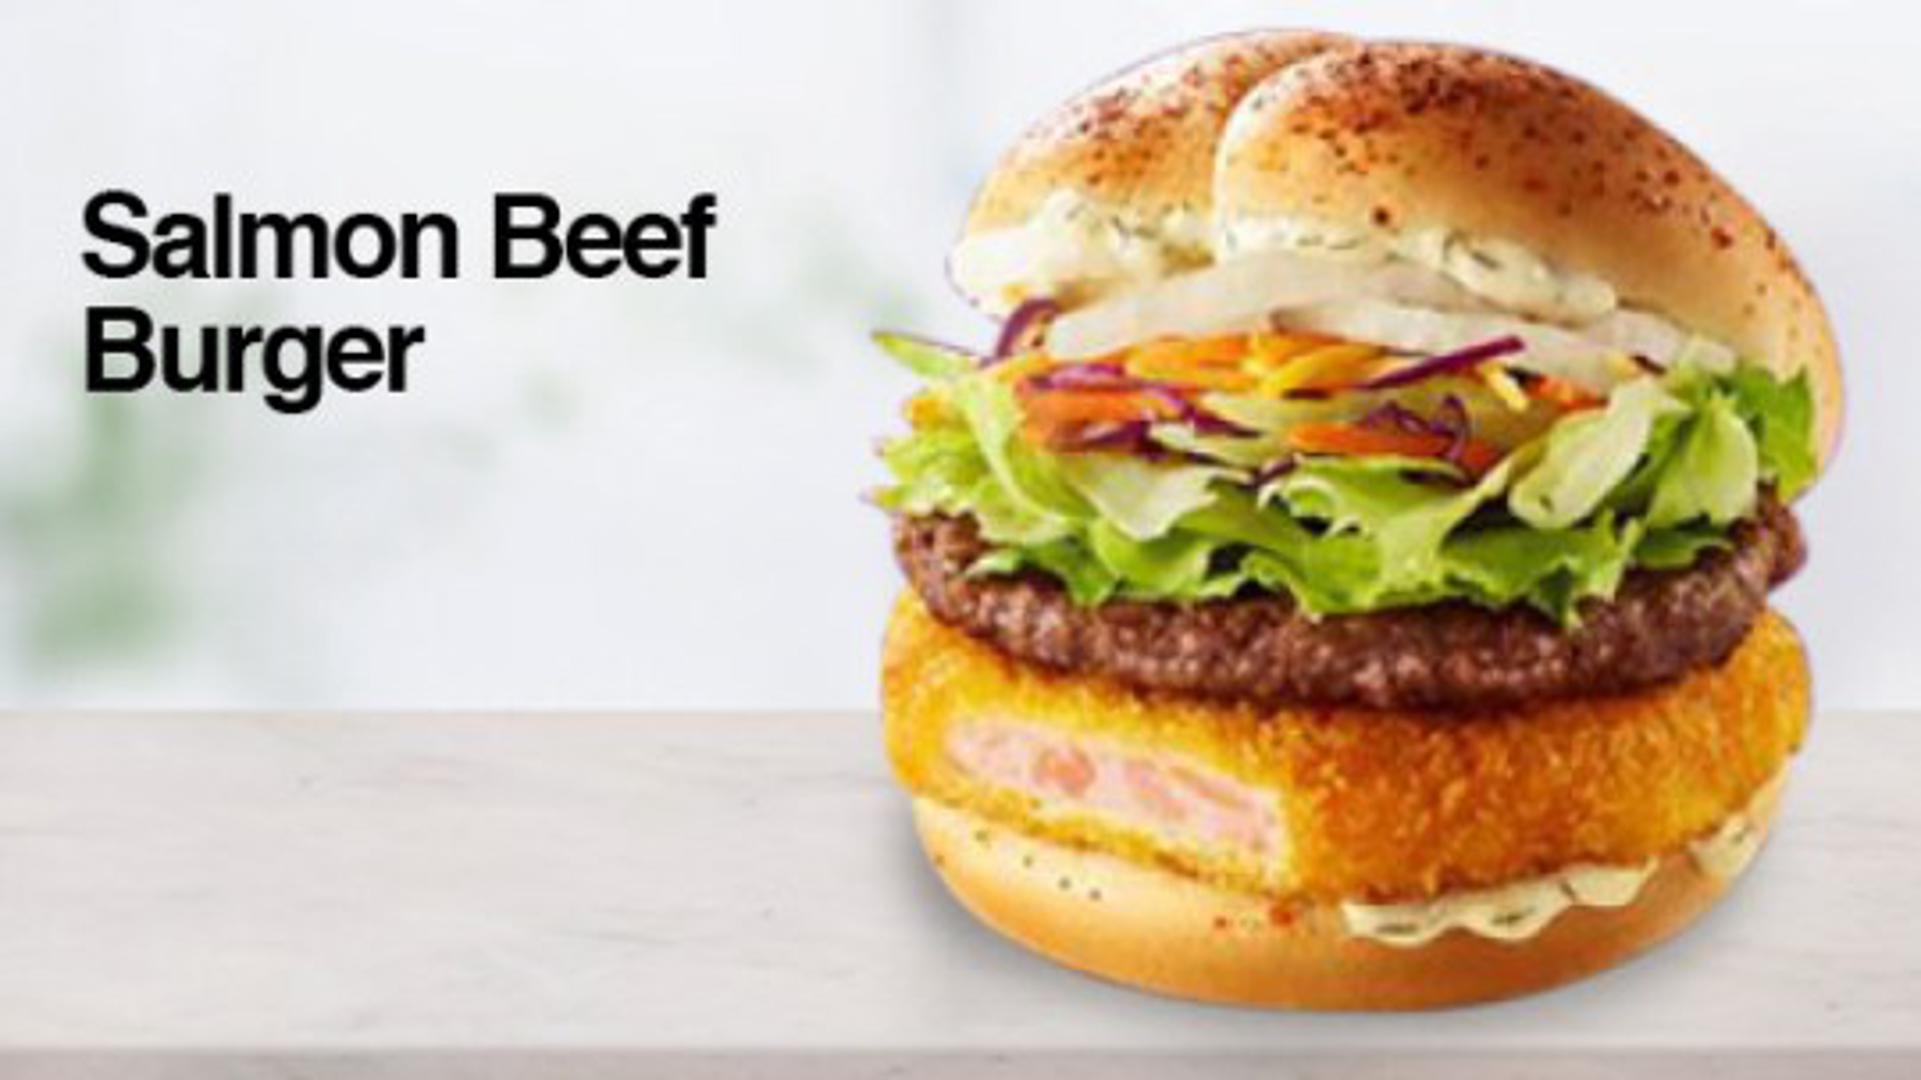 Južna Koreja nudi neobičnu kombinaciju - burger s junetinom i lososom!